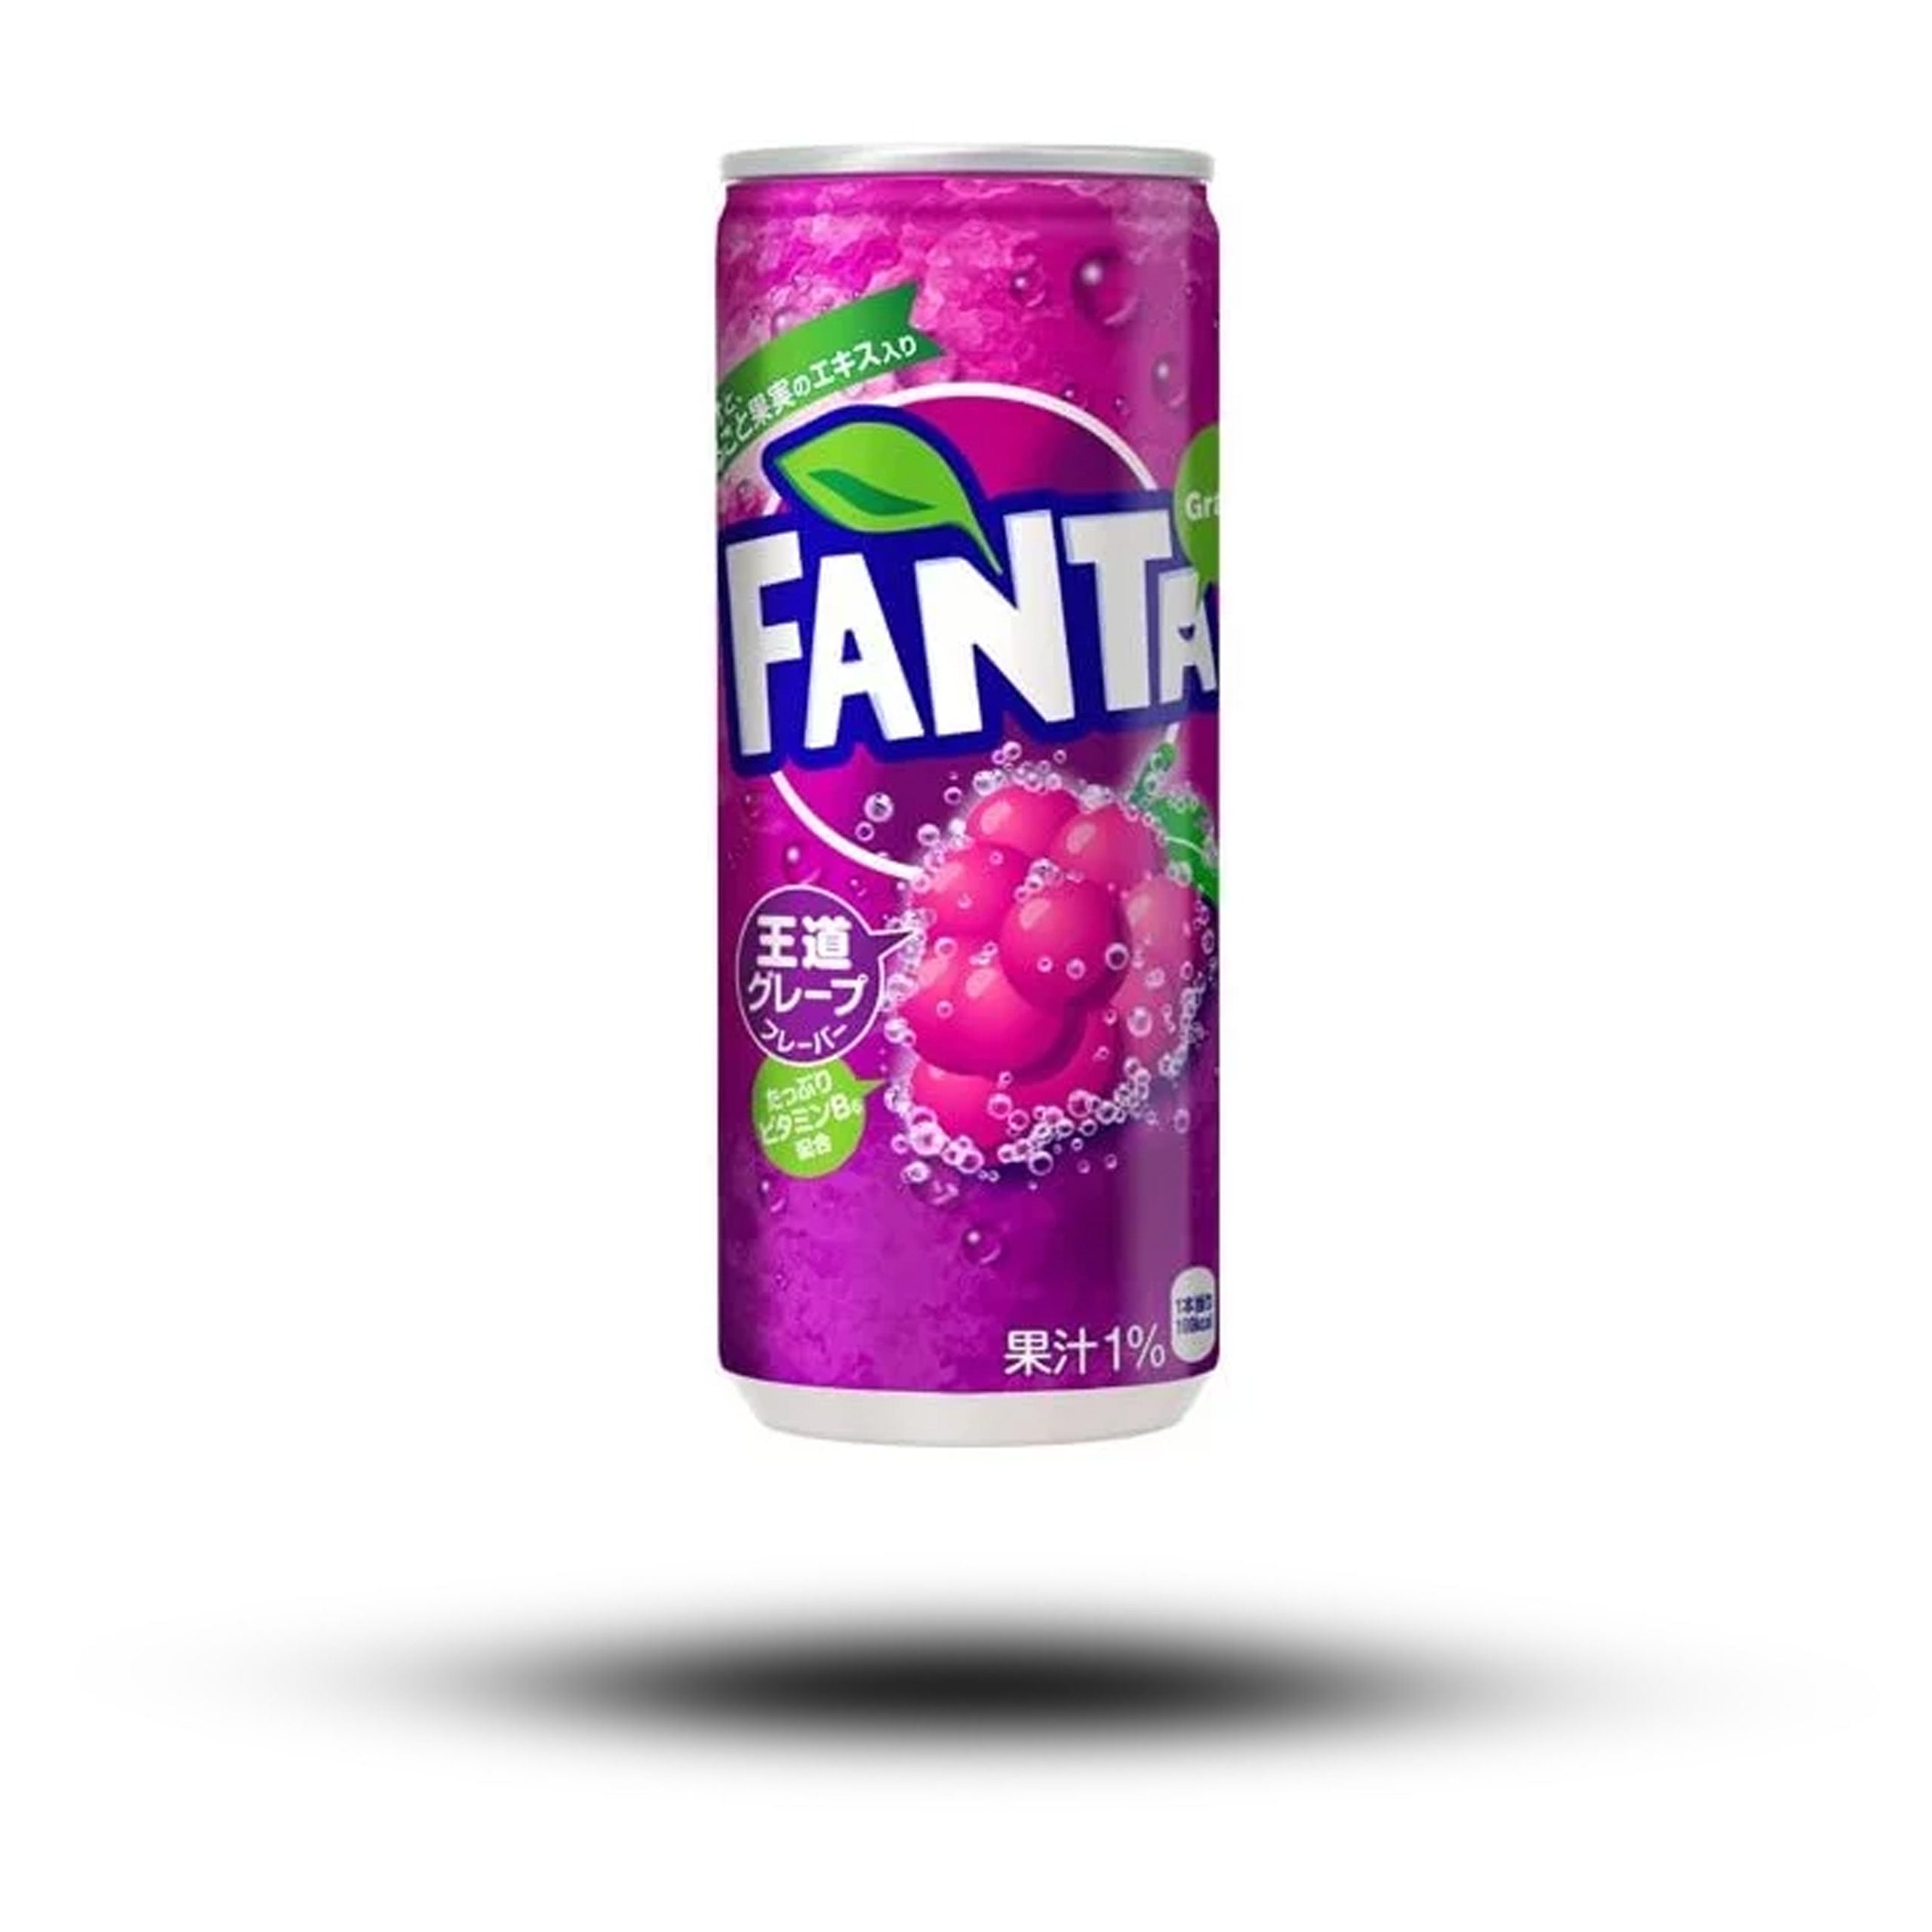 Fanta Grape (Japan) – The Goodie Guyz